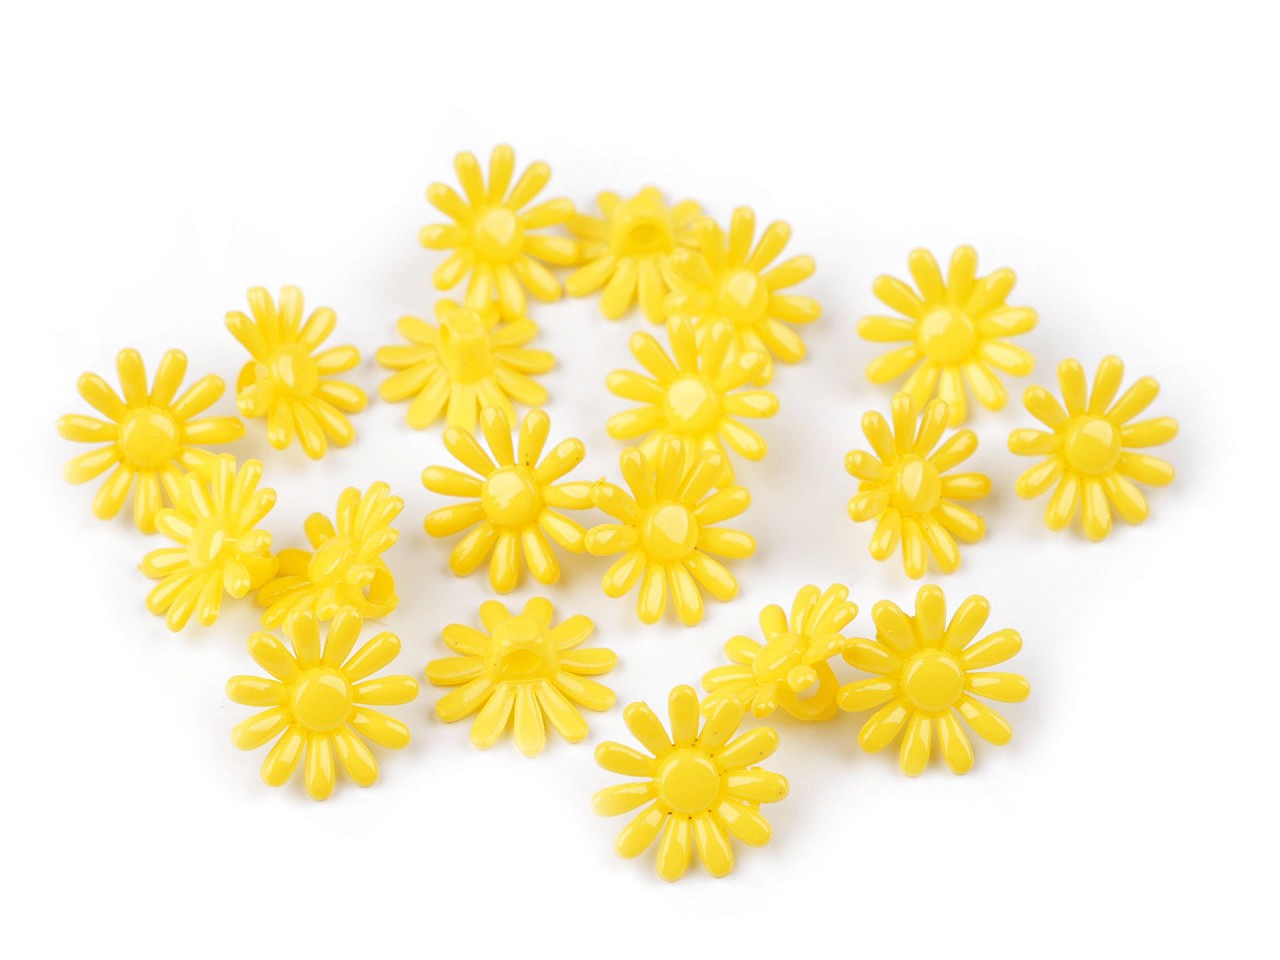 Textillux.sk - produkt Plastové gombíky / korálky kvet Ø15 mm